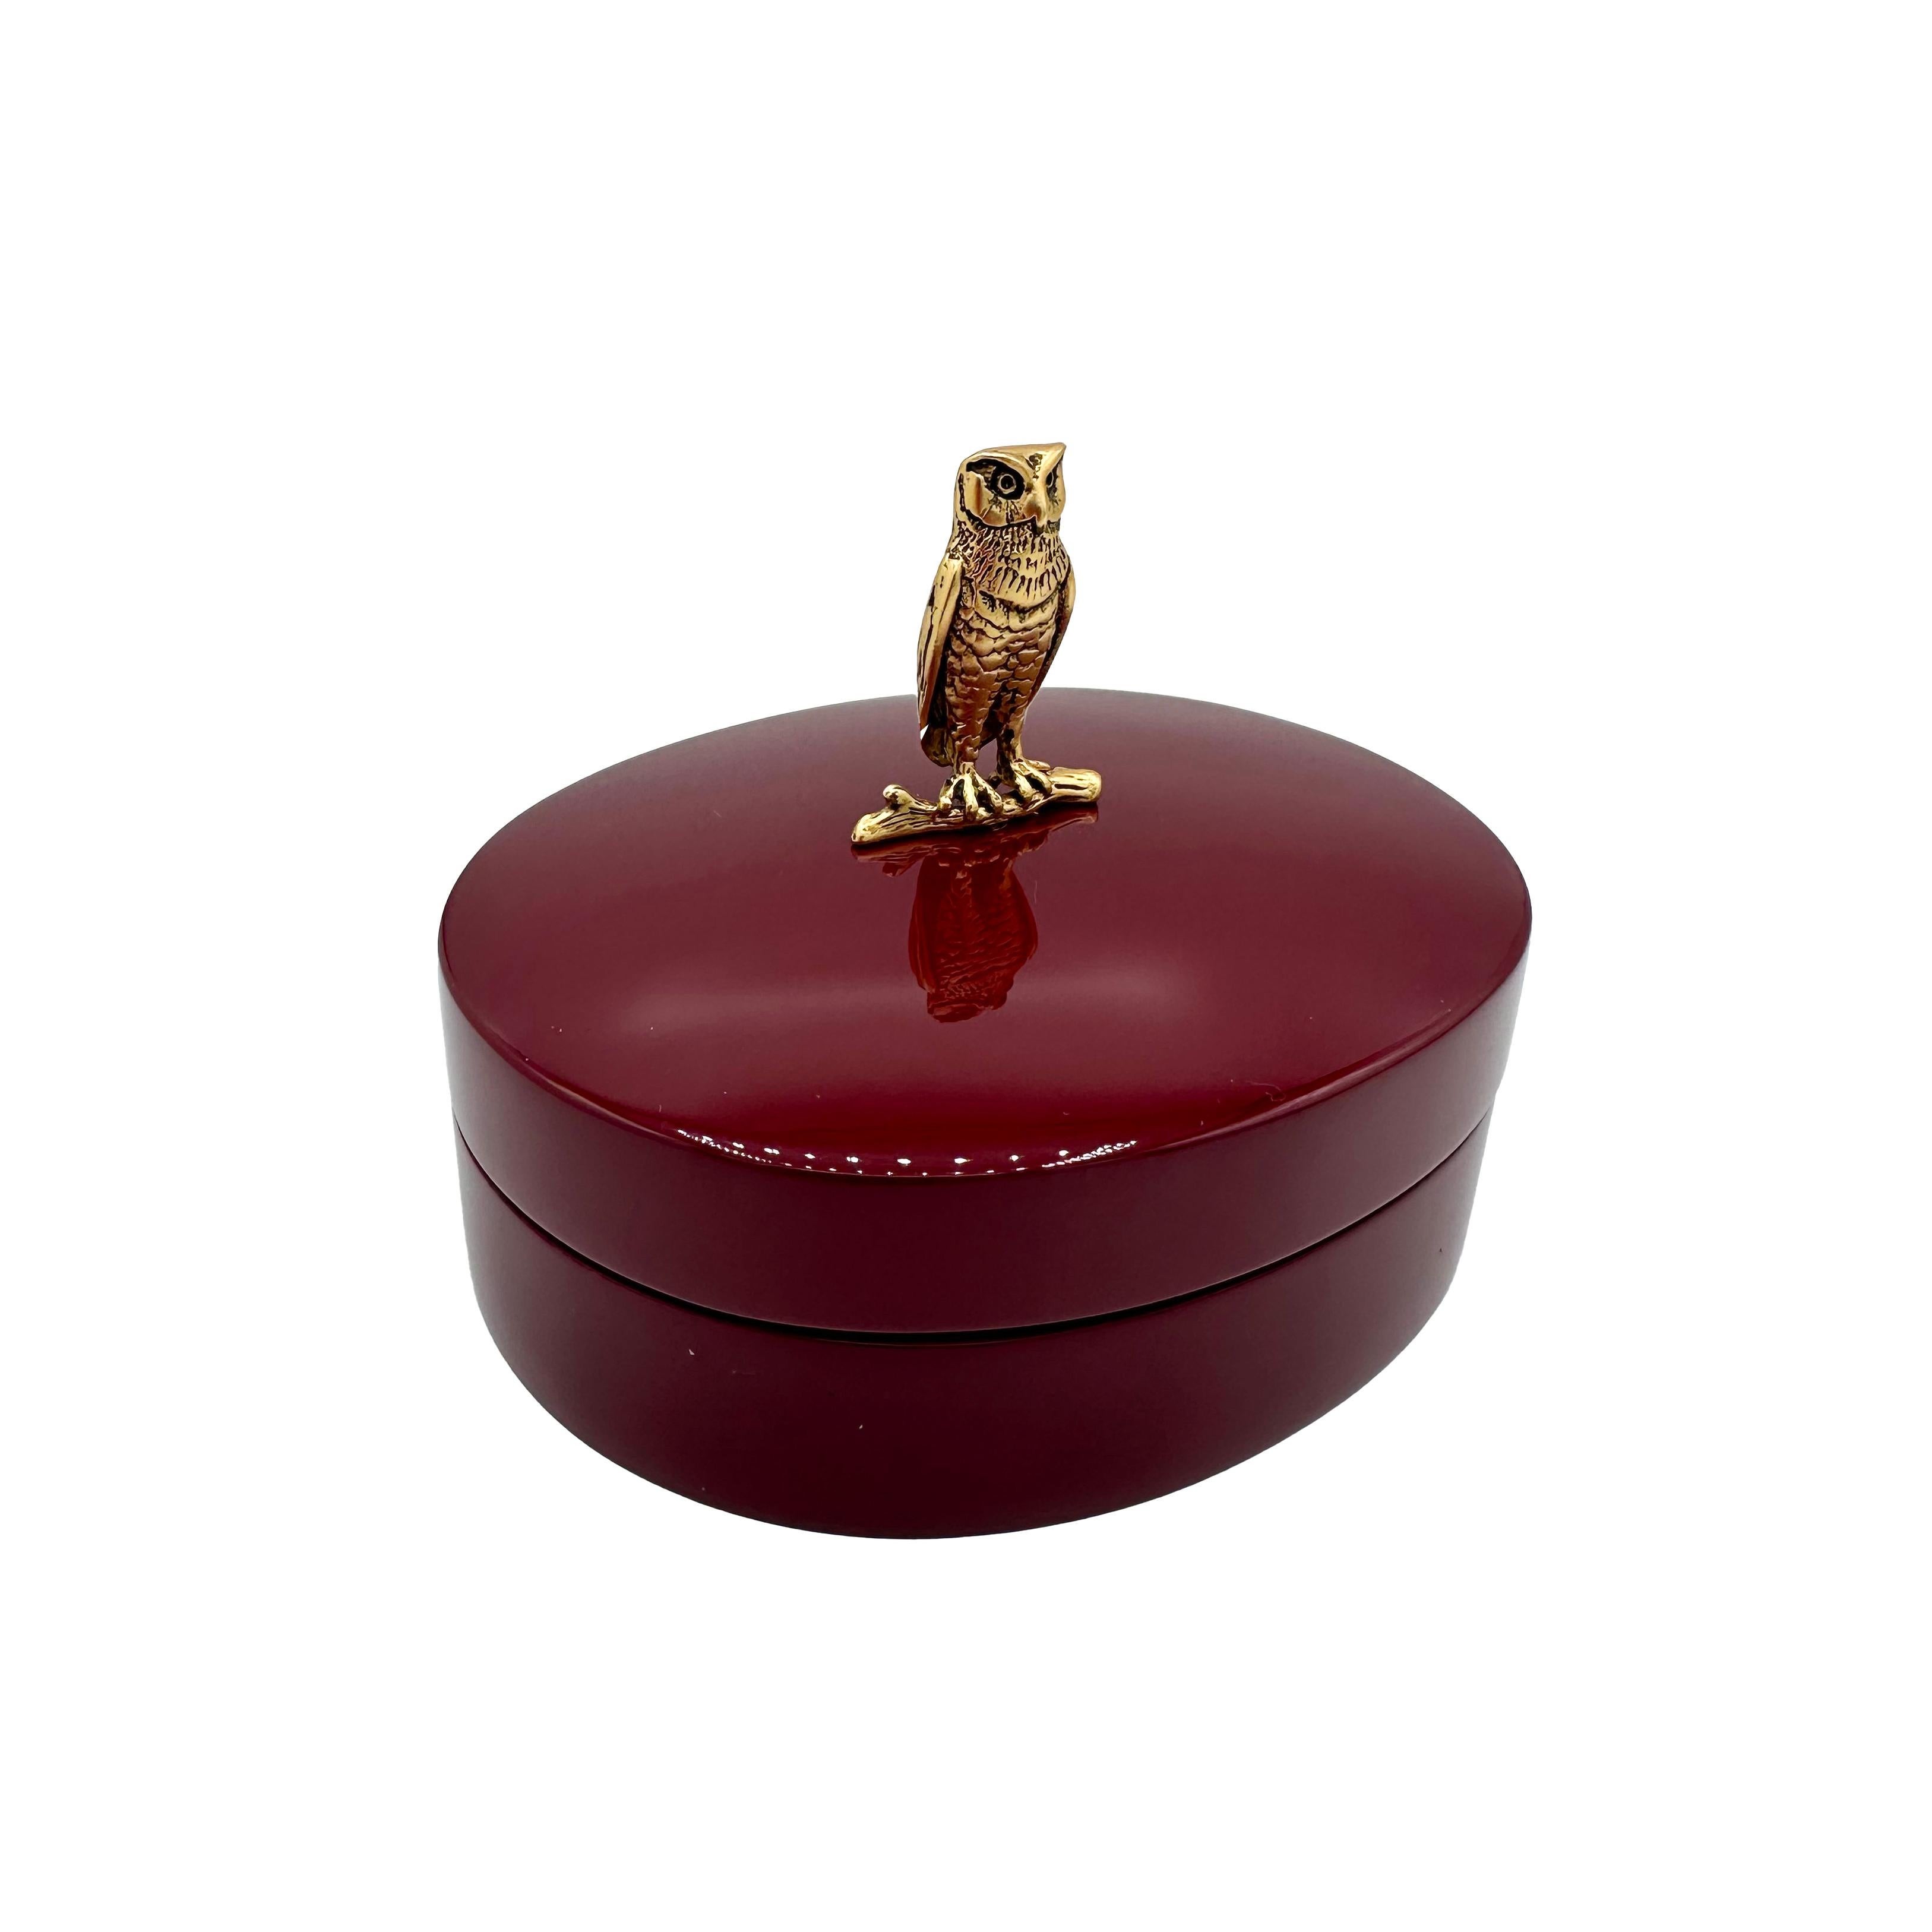 Unsere Wise Box ist wie ein Faberge's objects de virtu, jedoch wild und modern lackiert. Die Box wurde von The Lacquer Company speziell für Janet Mavec in einem satten Teal- oder Burgunderrot hergestellt - für Ihre Kommode oder Ihren Schreibtisch.